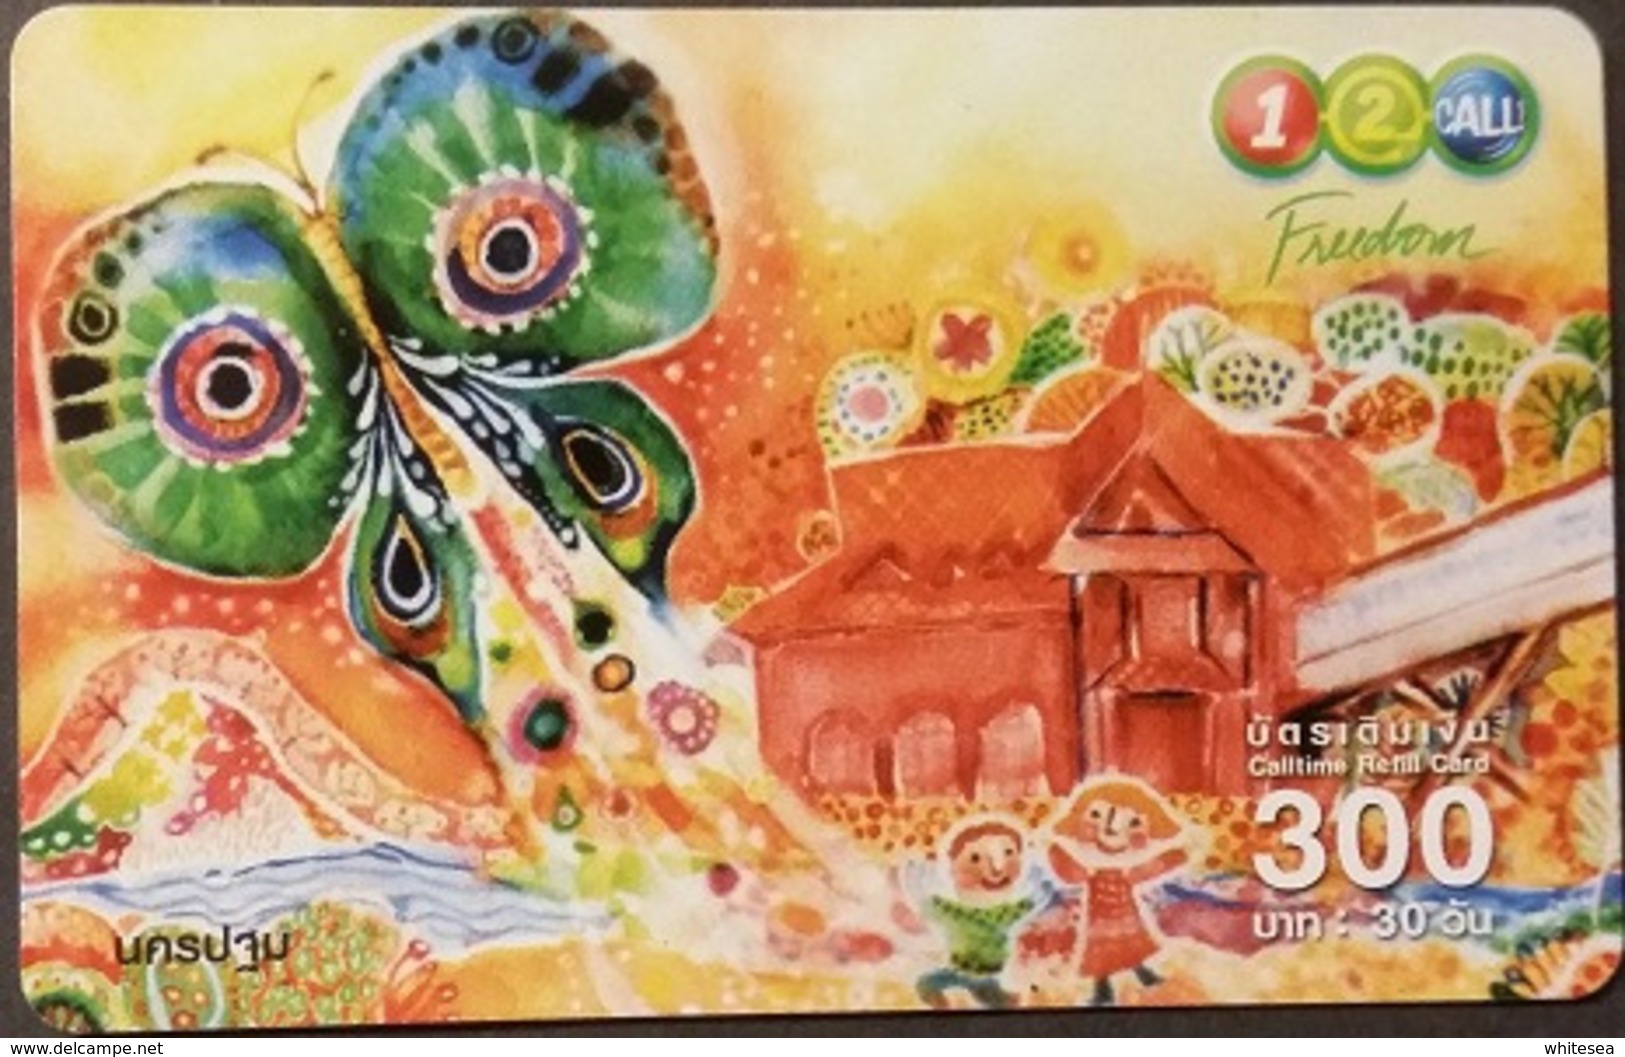 Mobilecard Thailand - 12Call - Zeichnung - Insekten - Schmetterling - Tailandia